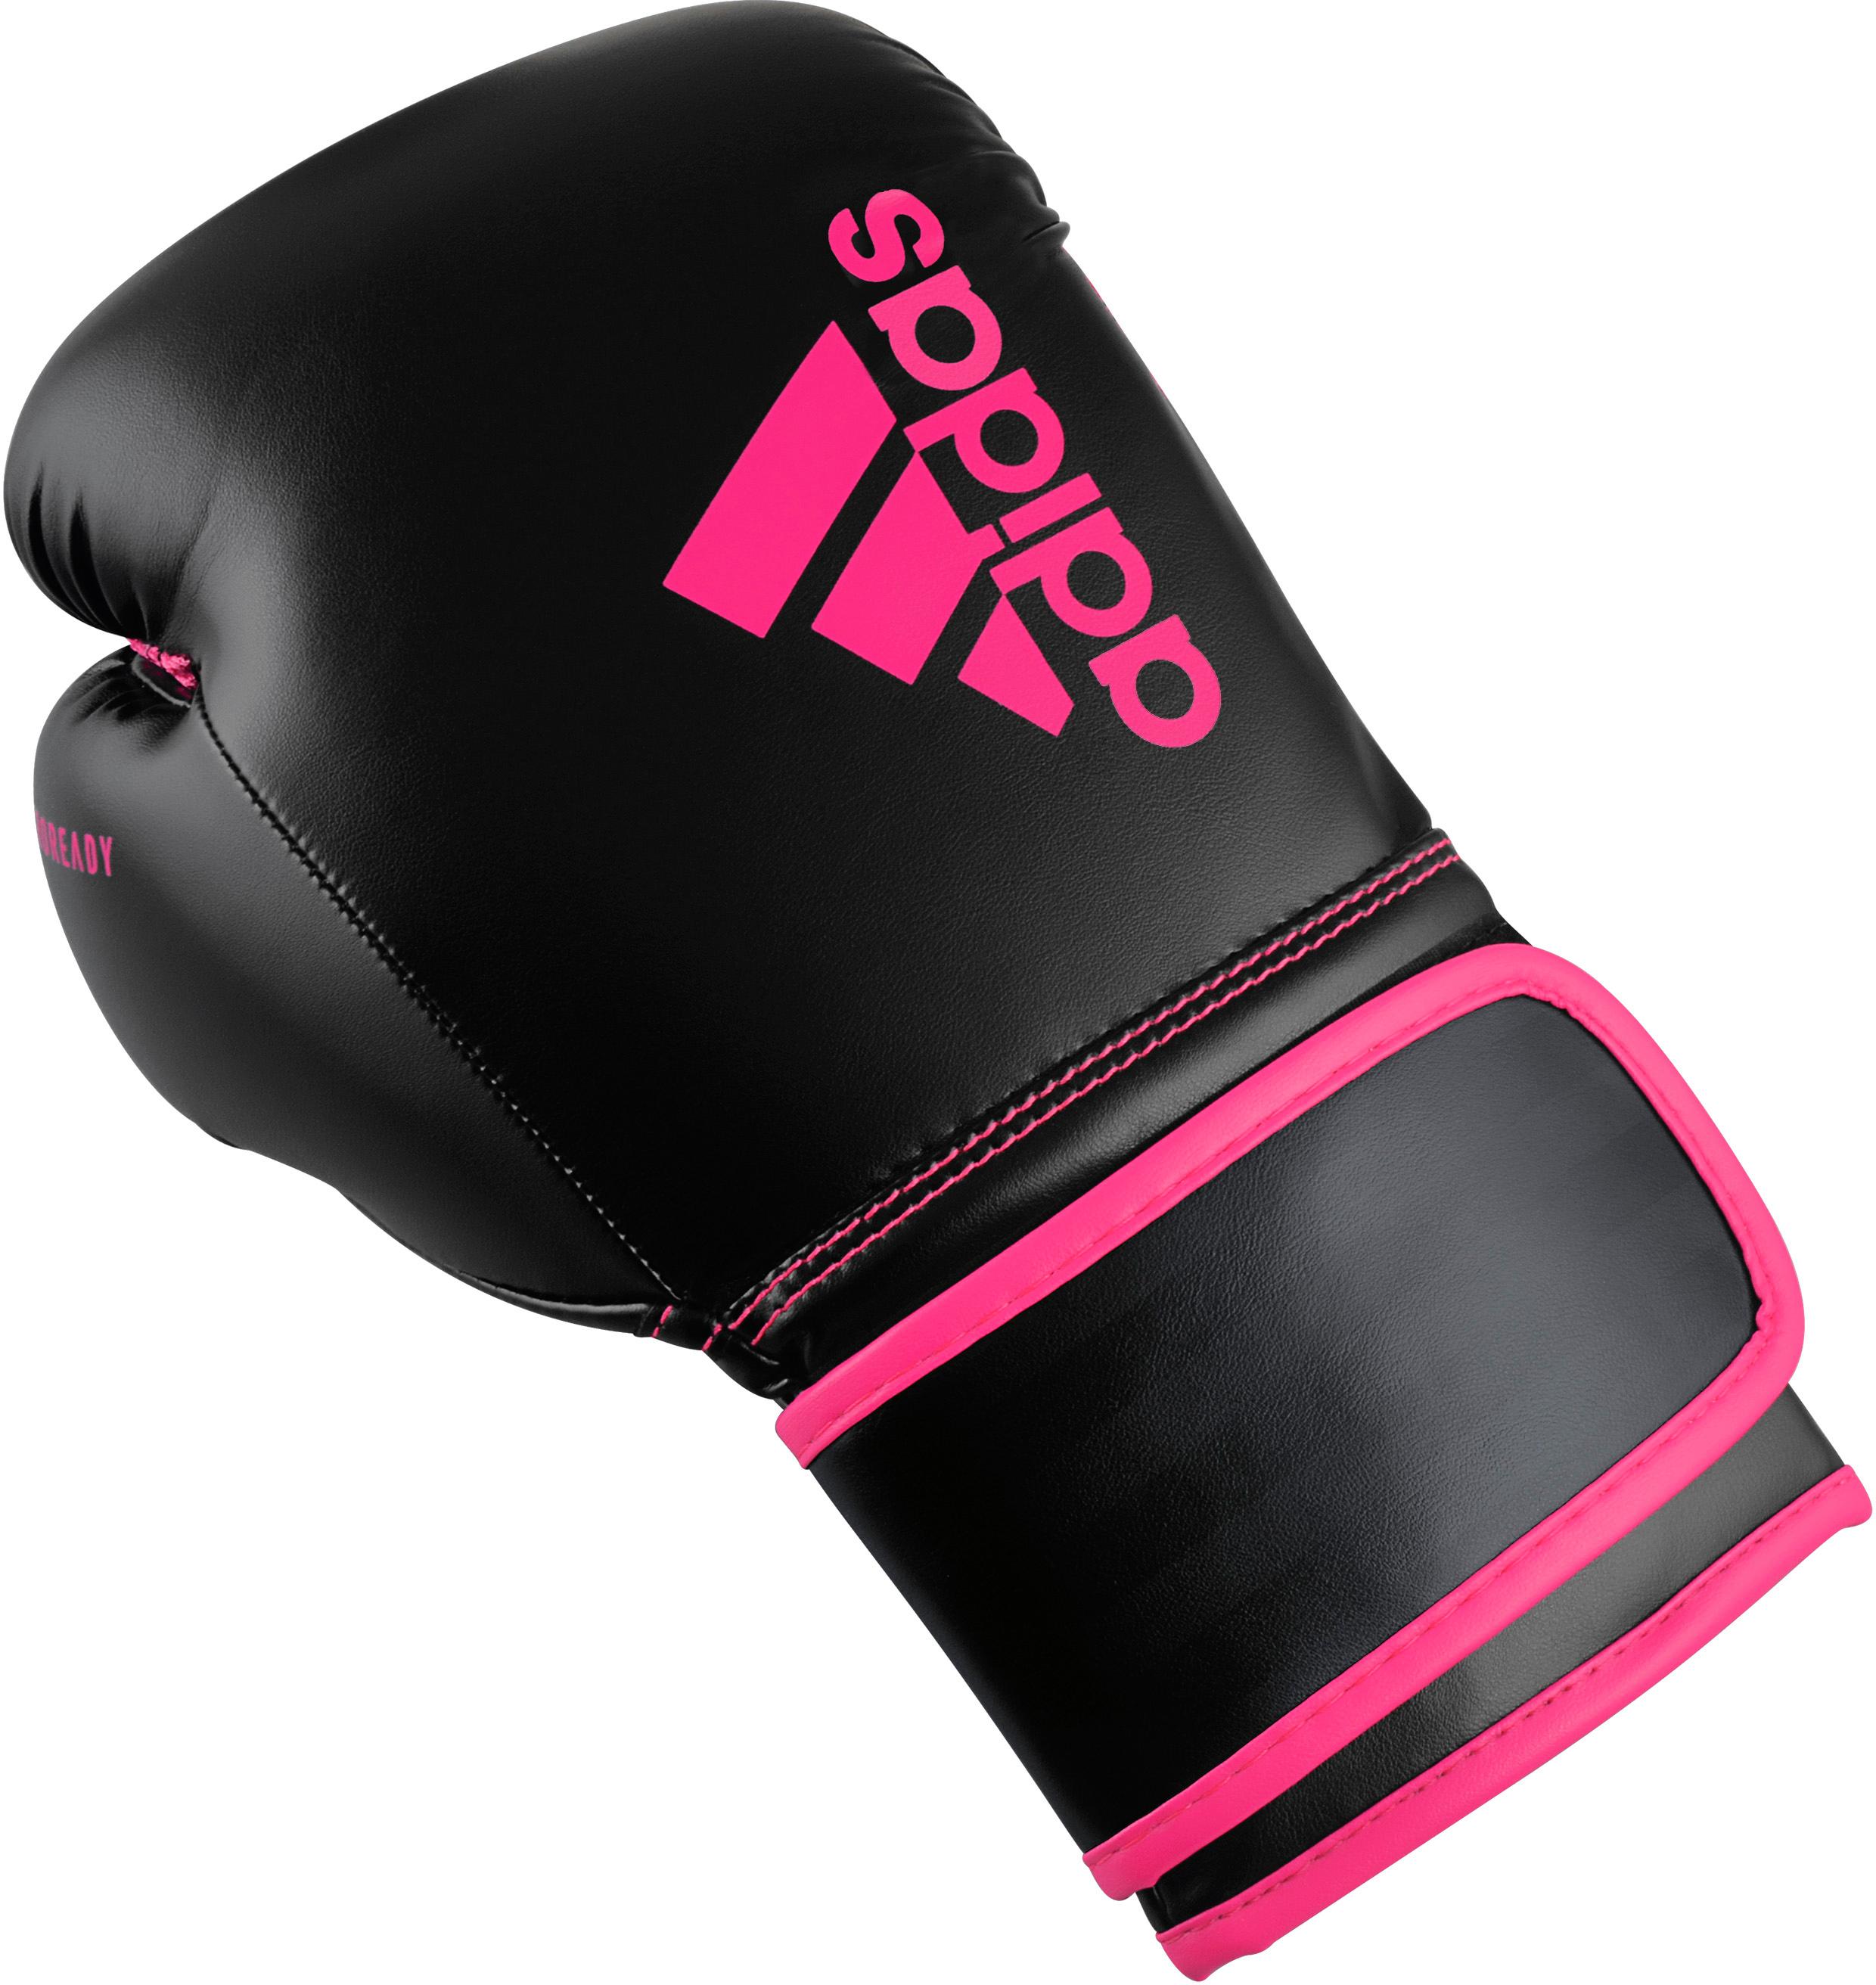 Adidas Hybrid schwarz-pink 80 im von SportScheck kaufen Boxhandschuhe Shop Online